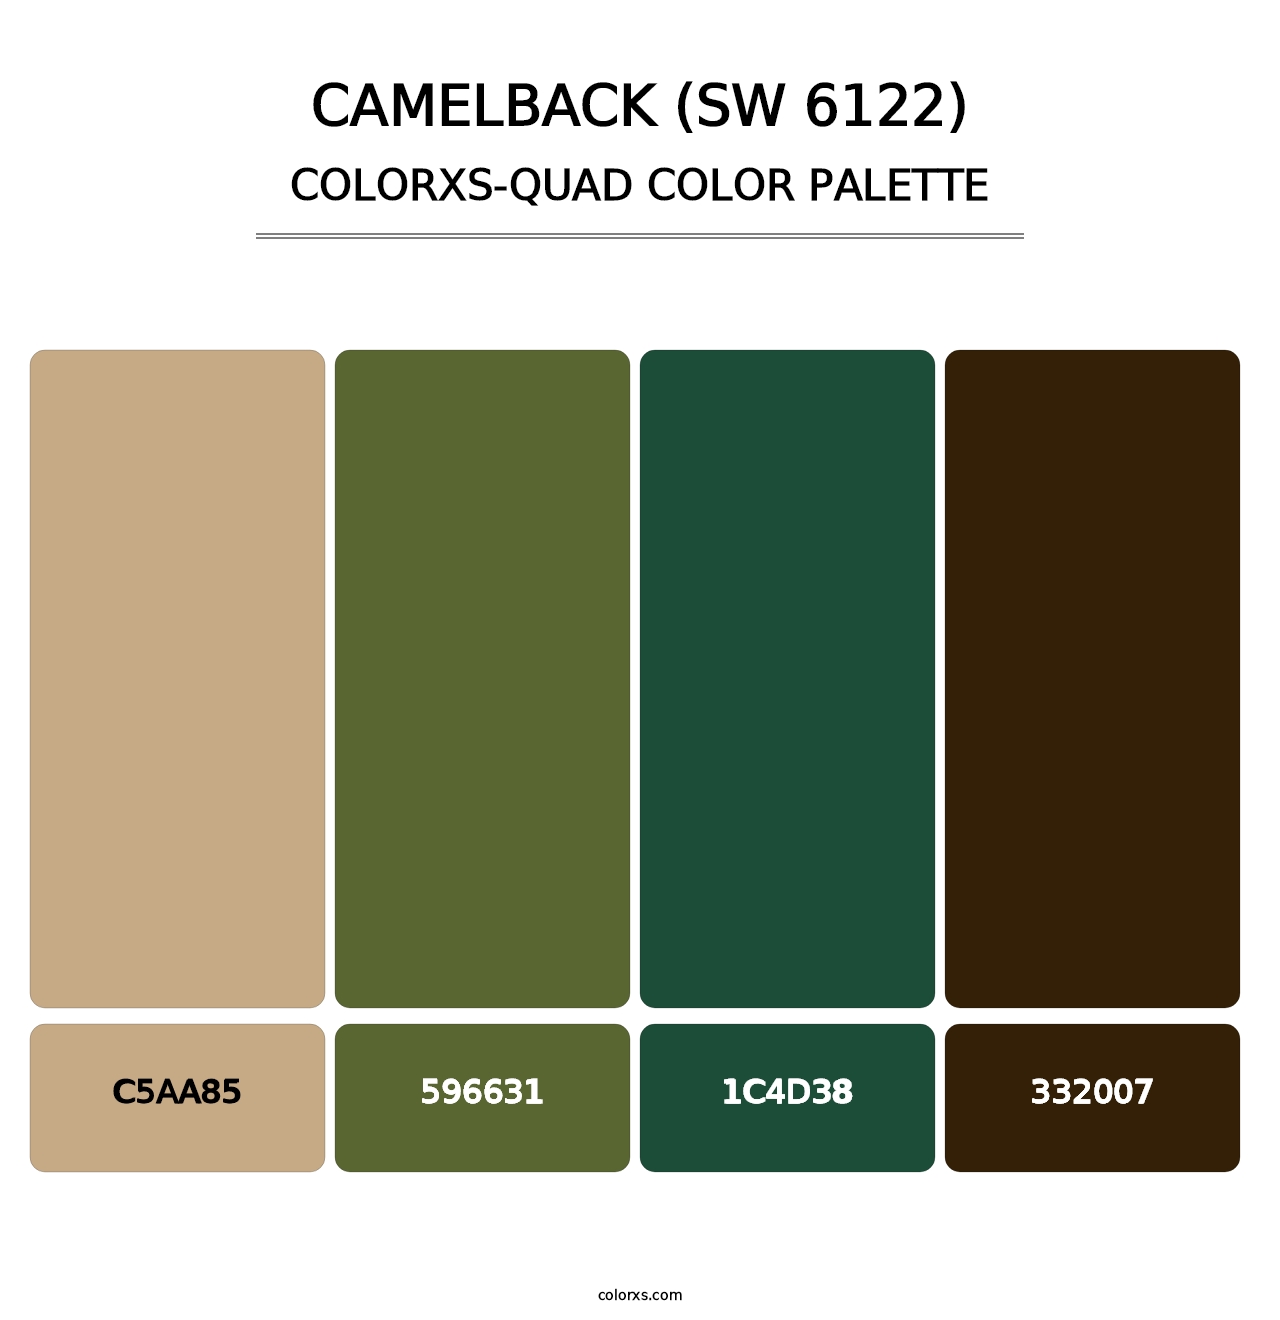 Camelback (SW 6122) - Colorxs Quad Palette